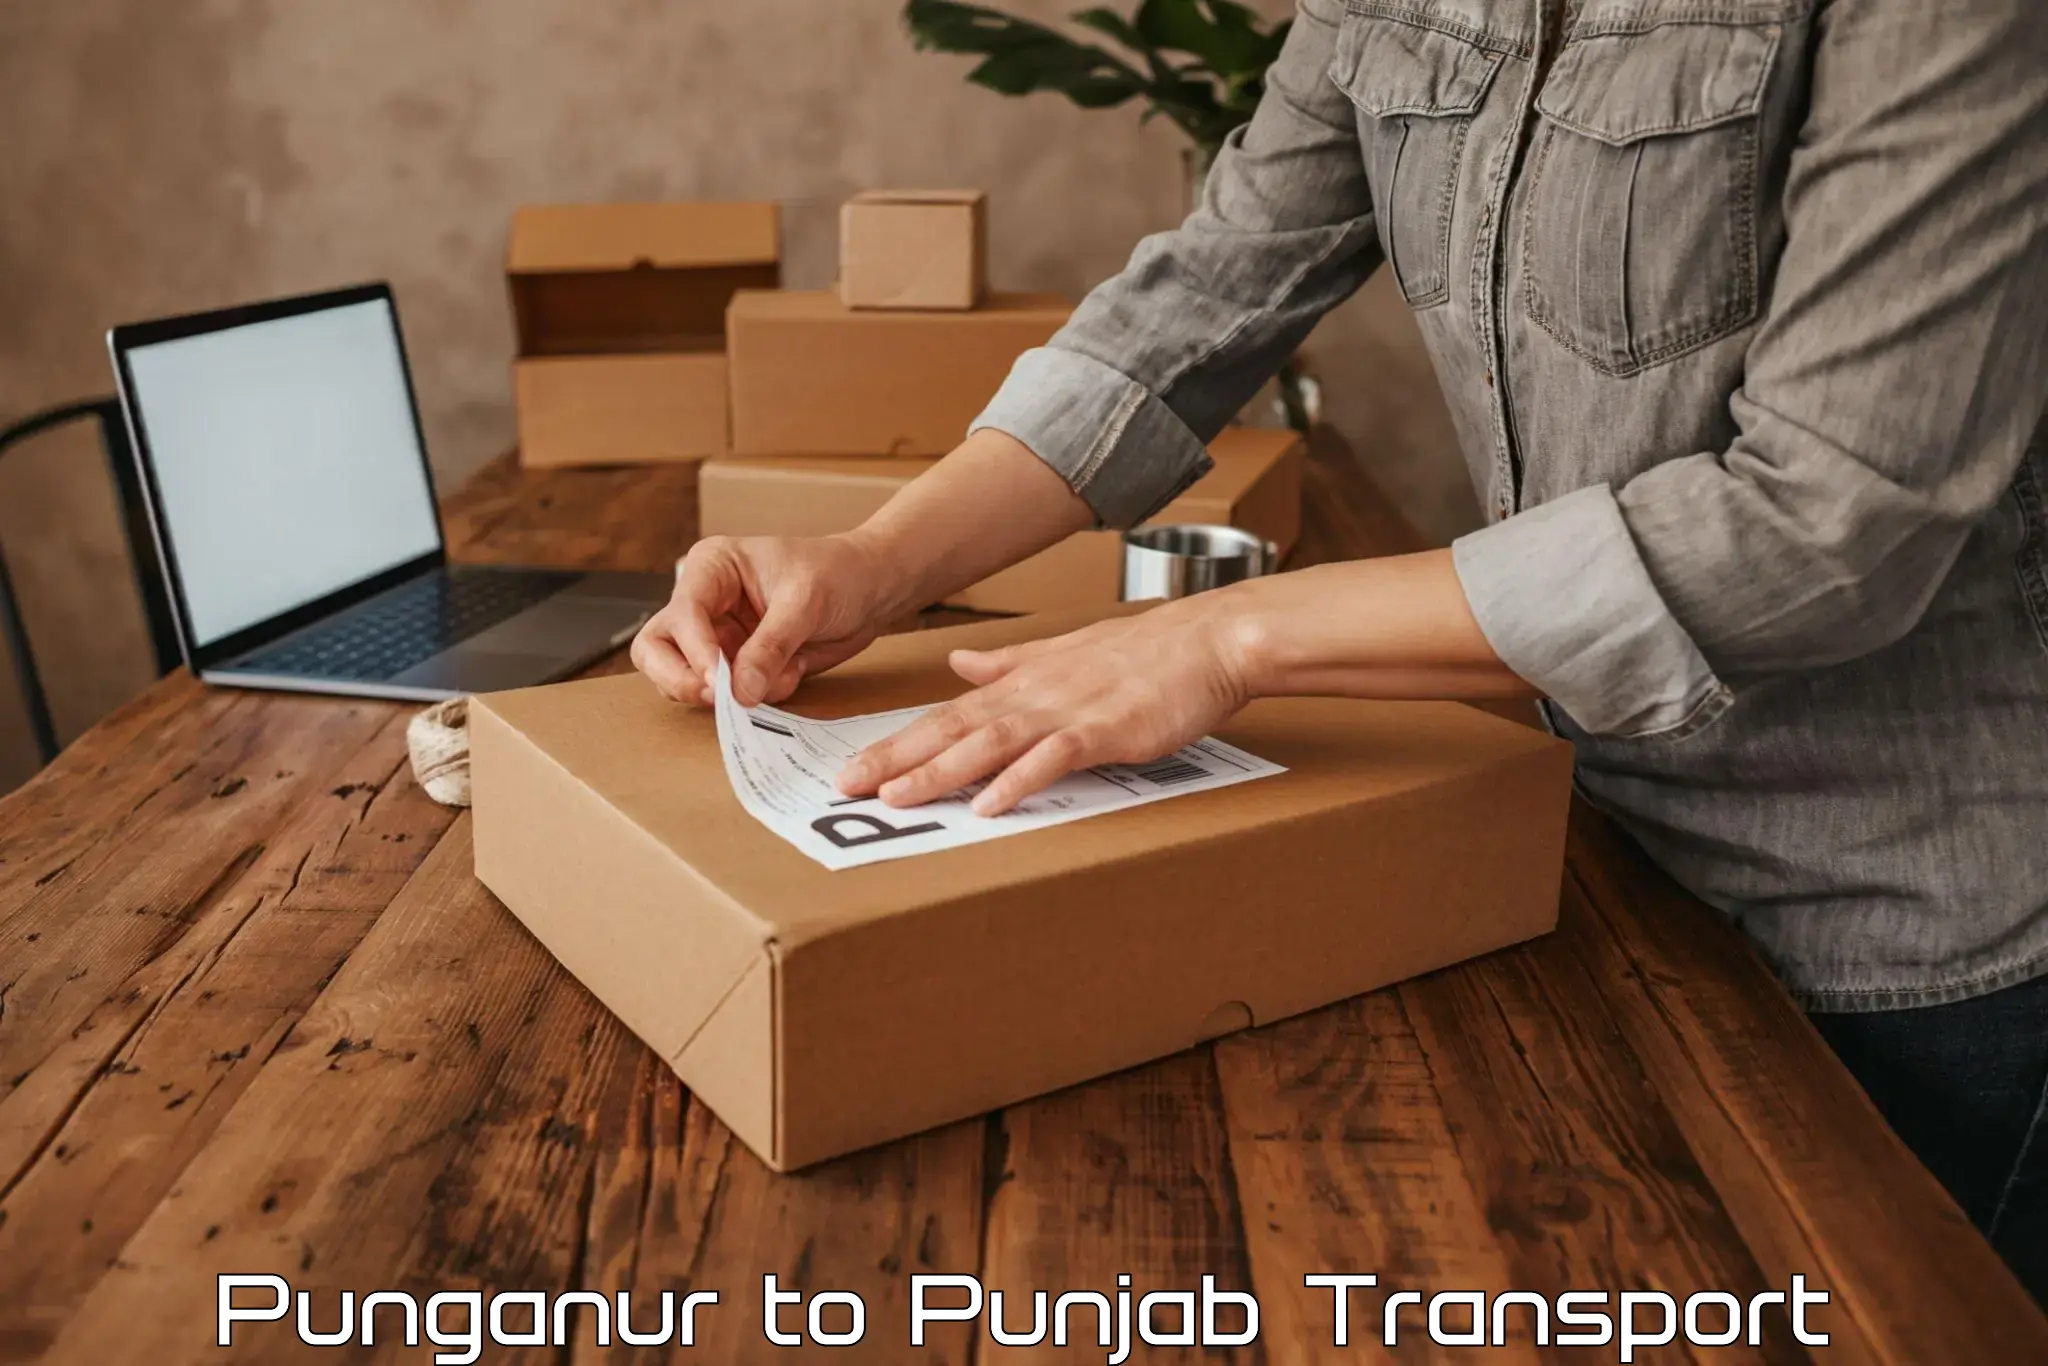 Online transport service Punganur to Tarsikka